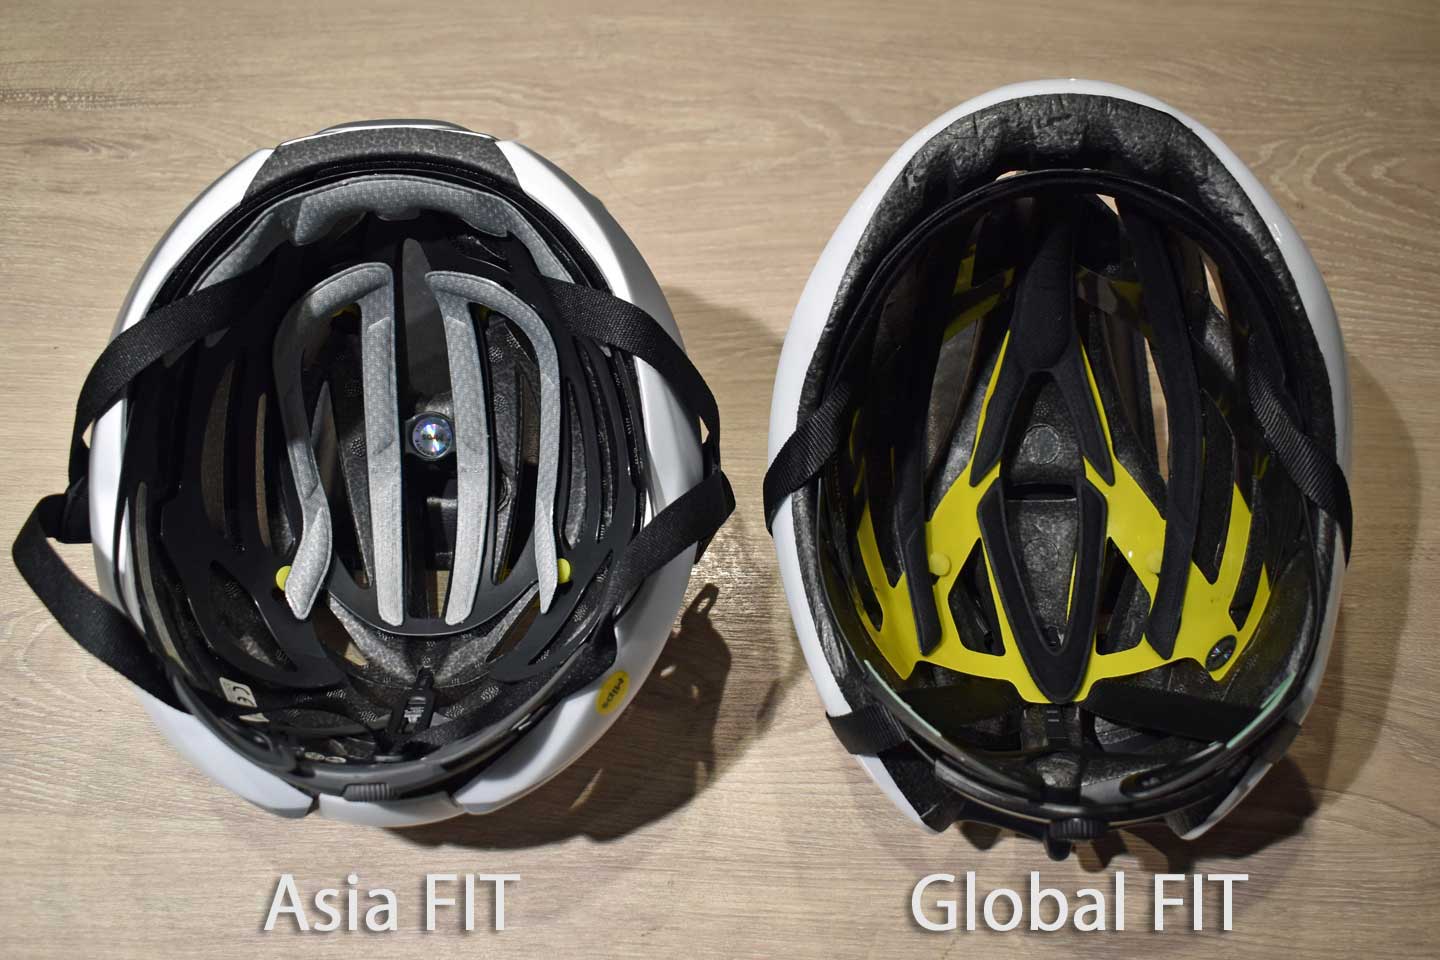 アジアンフィットとグローバルフィットのヘルメットが並んでいる